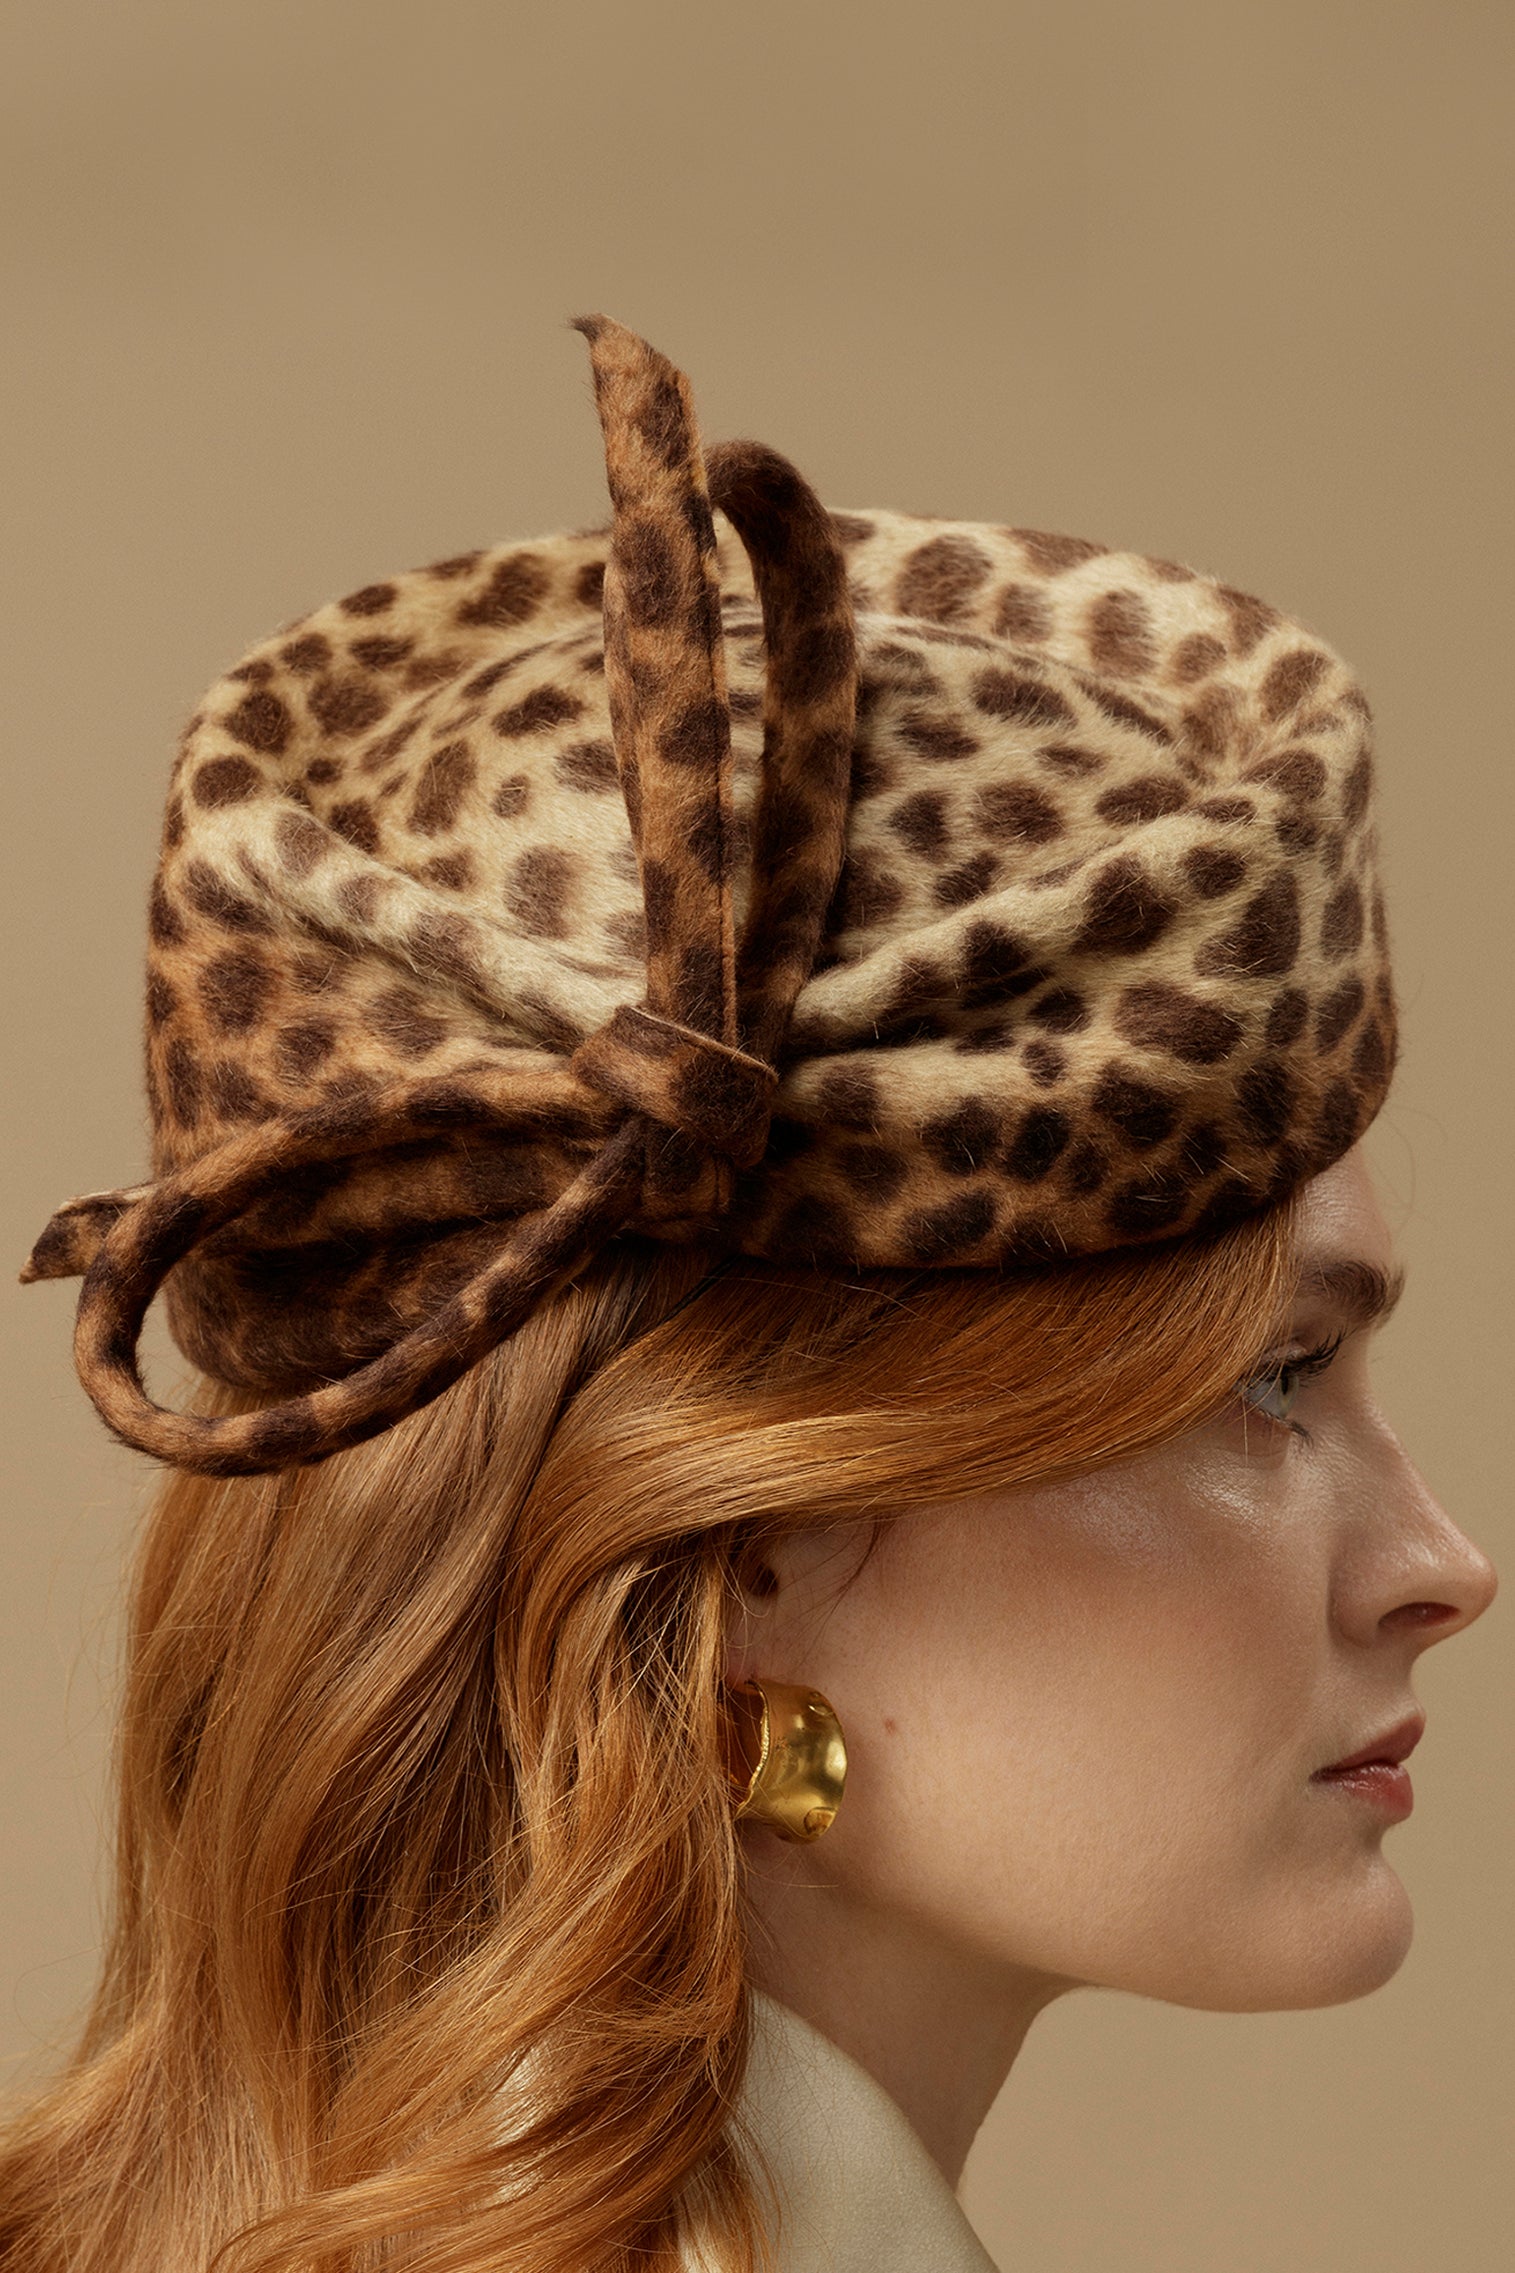 Leopard Mayfair Pillbox Hat - Women’s Hats - Lock & Co. Hatters London UK